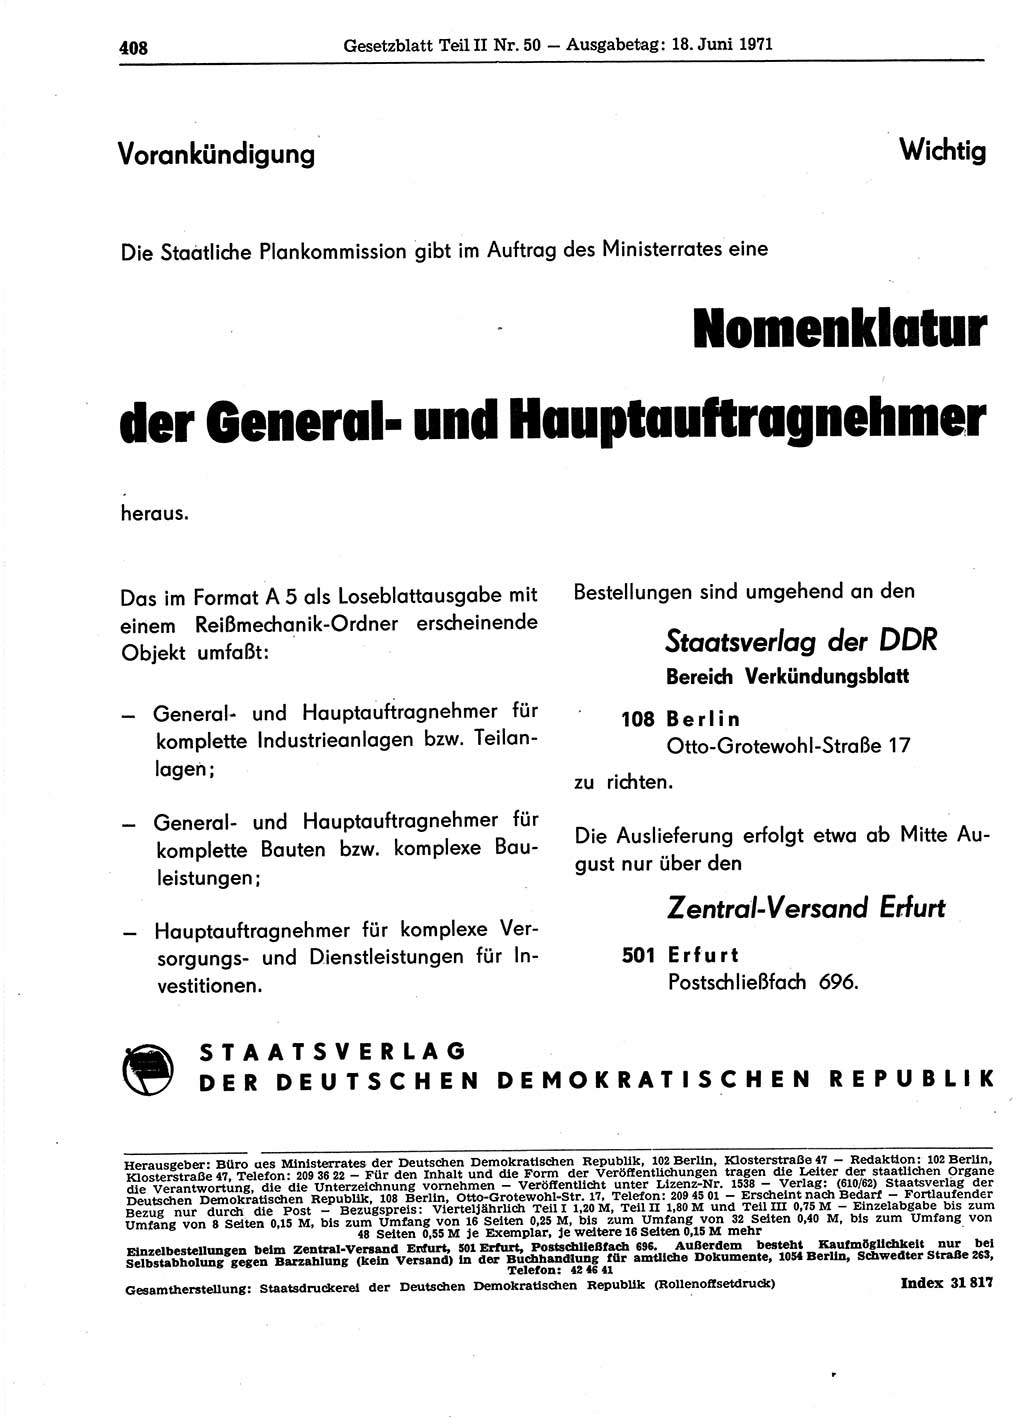 Gesetzblatt (GBl.) der Deutschen Demokratischen Republik (DDR) Teil ⅠⅠ 1971, Seite 408 (GBl. DDR ⅠⅠ 1971, S. 408)